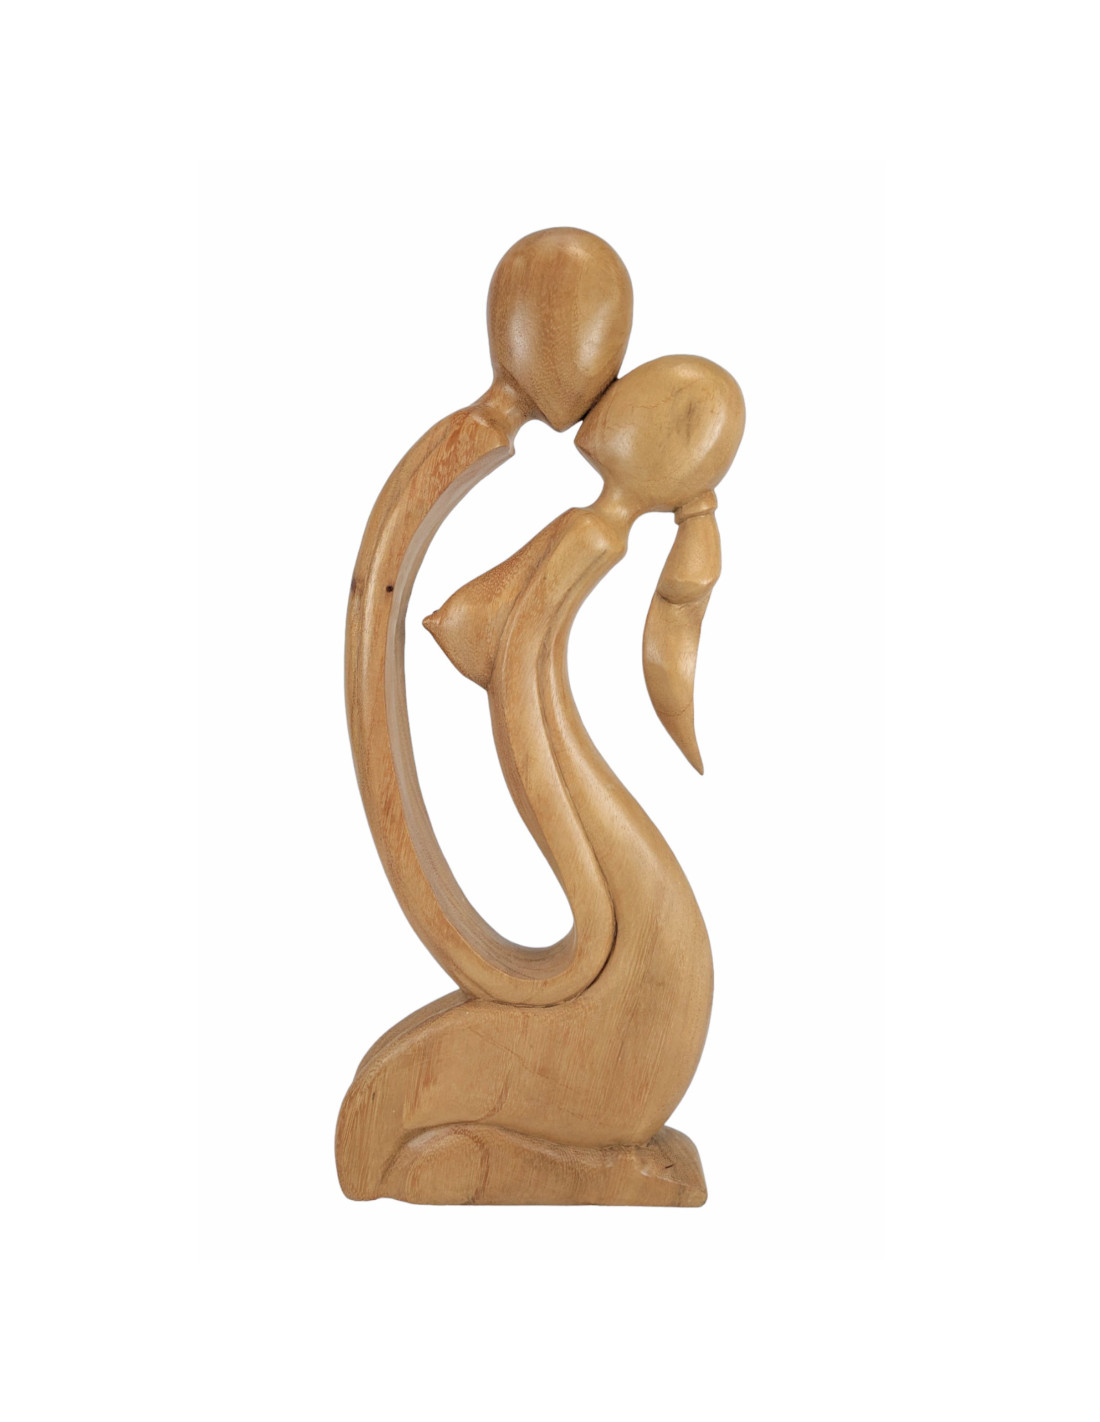 Statua coppia amore-design moderno contemporaneo in legno, originale.